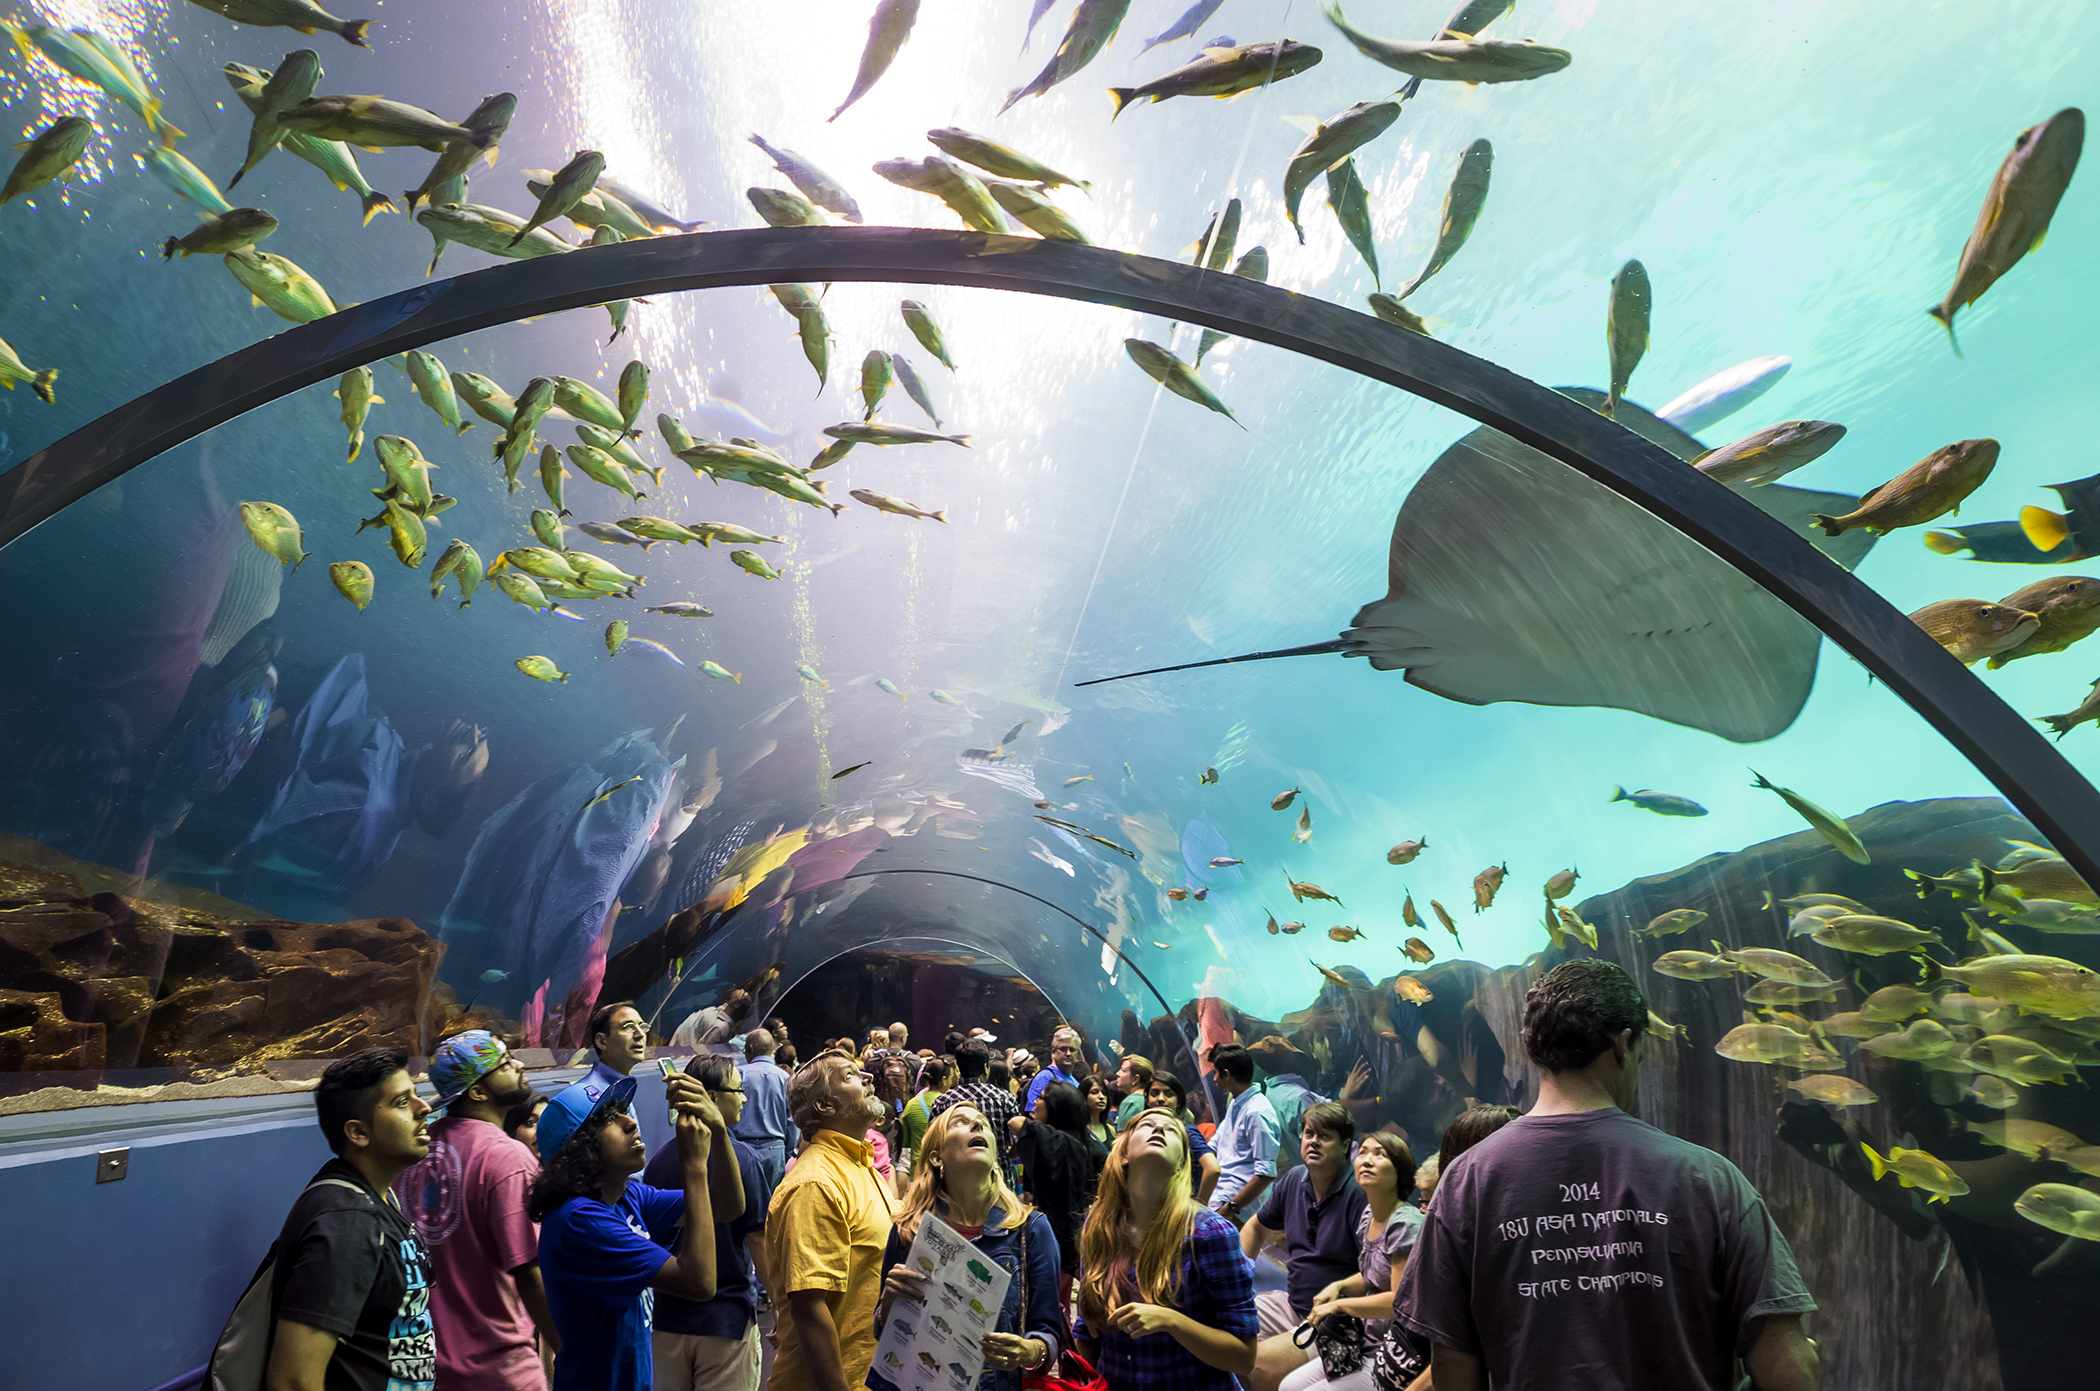 Interior of Georgia Aquarium, the world's largest aquarium holding more than 8 million gallons of water in Atlanta, Georgia on August 2, 2014